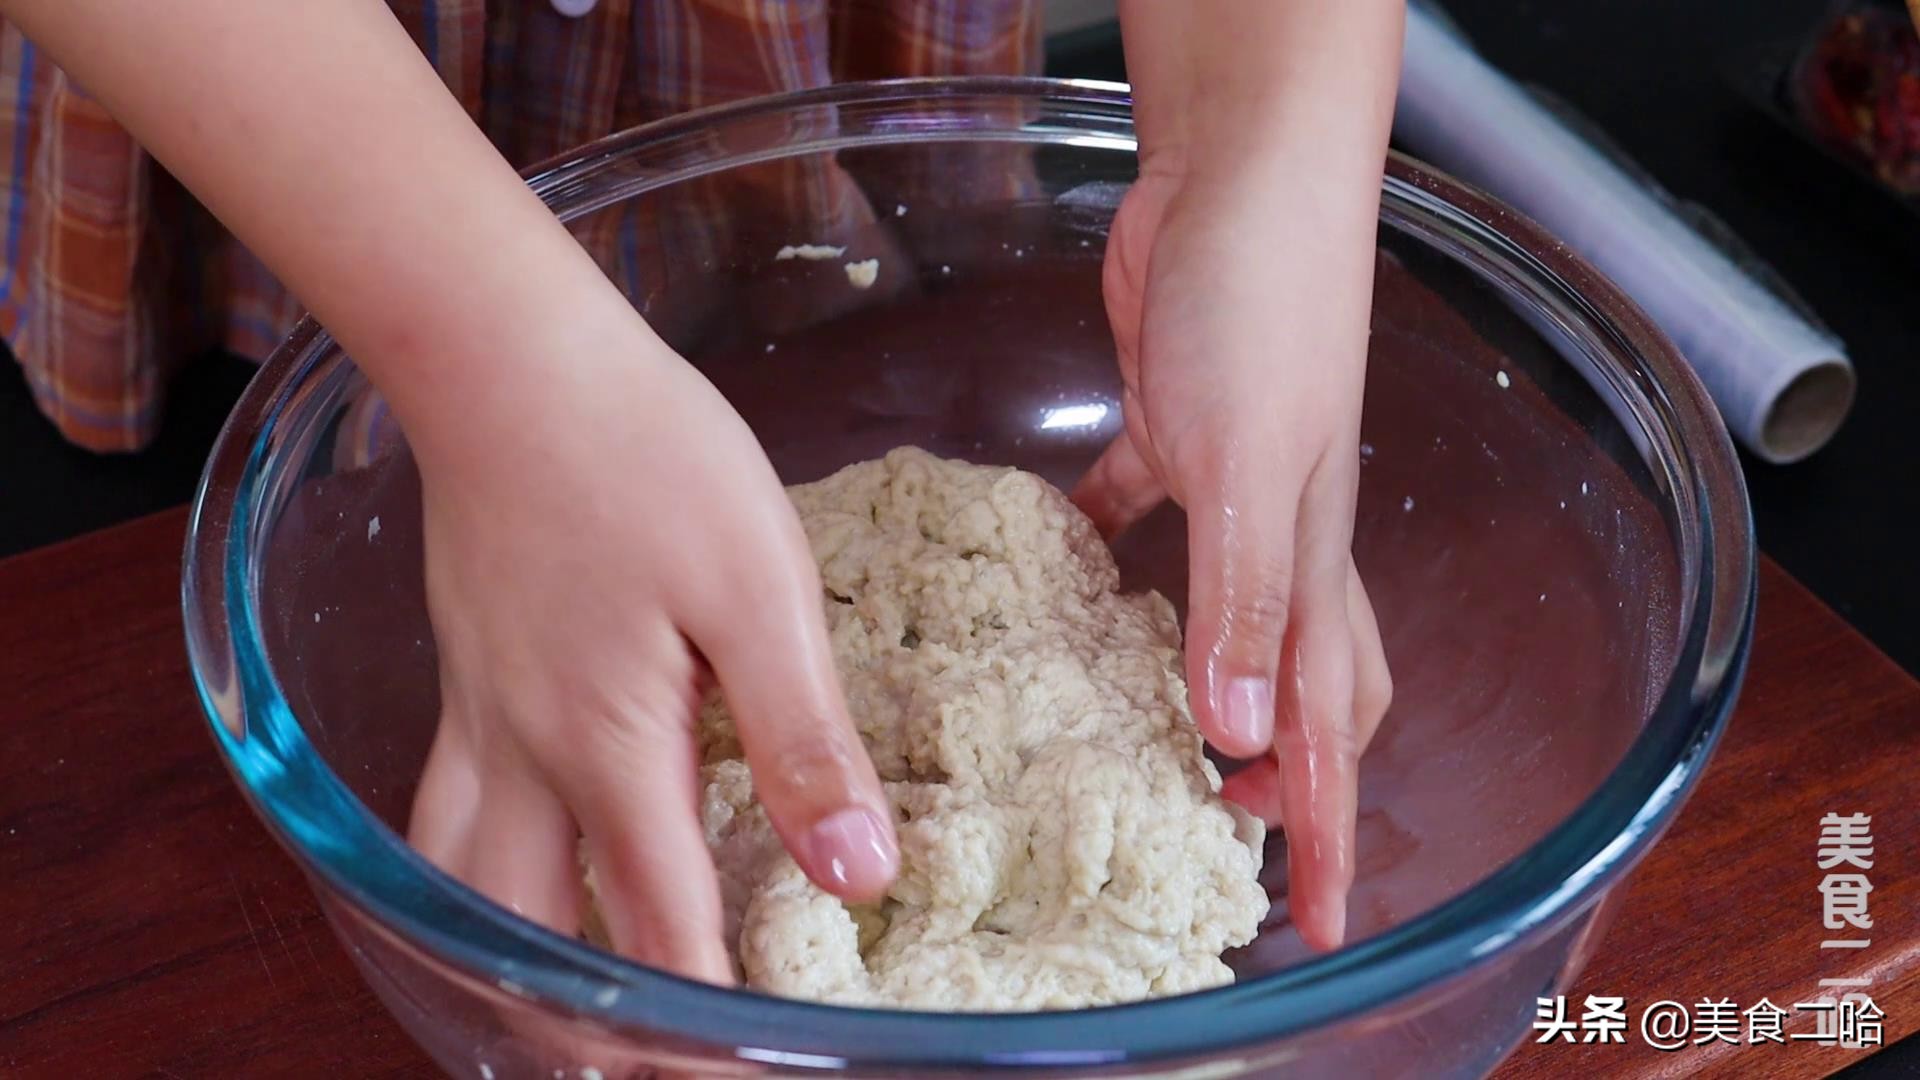 自制烤面筋：半斤粉能做30串，劲道麻辣，在家轻松实现面筋自由